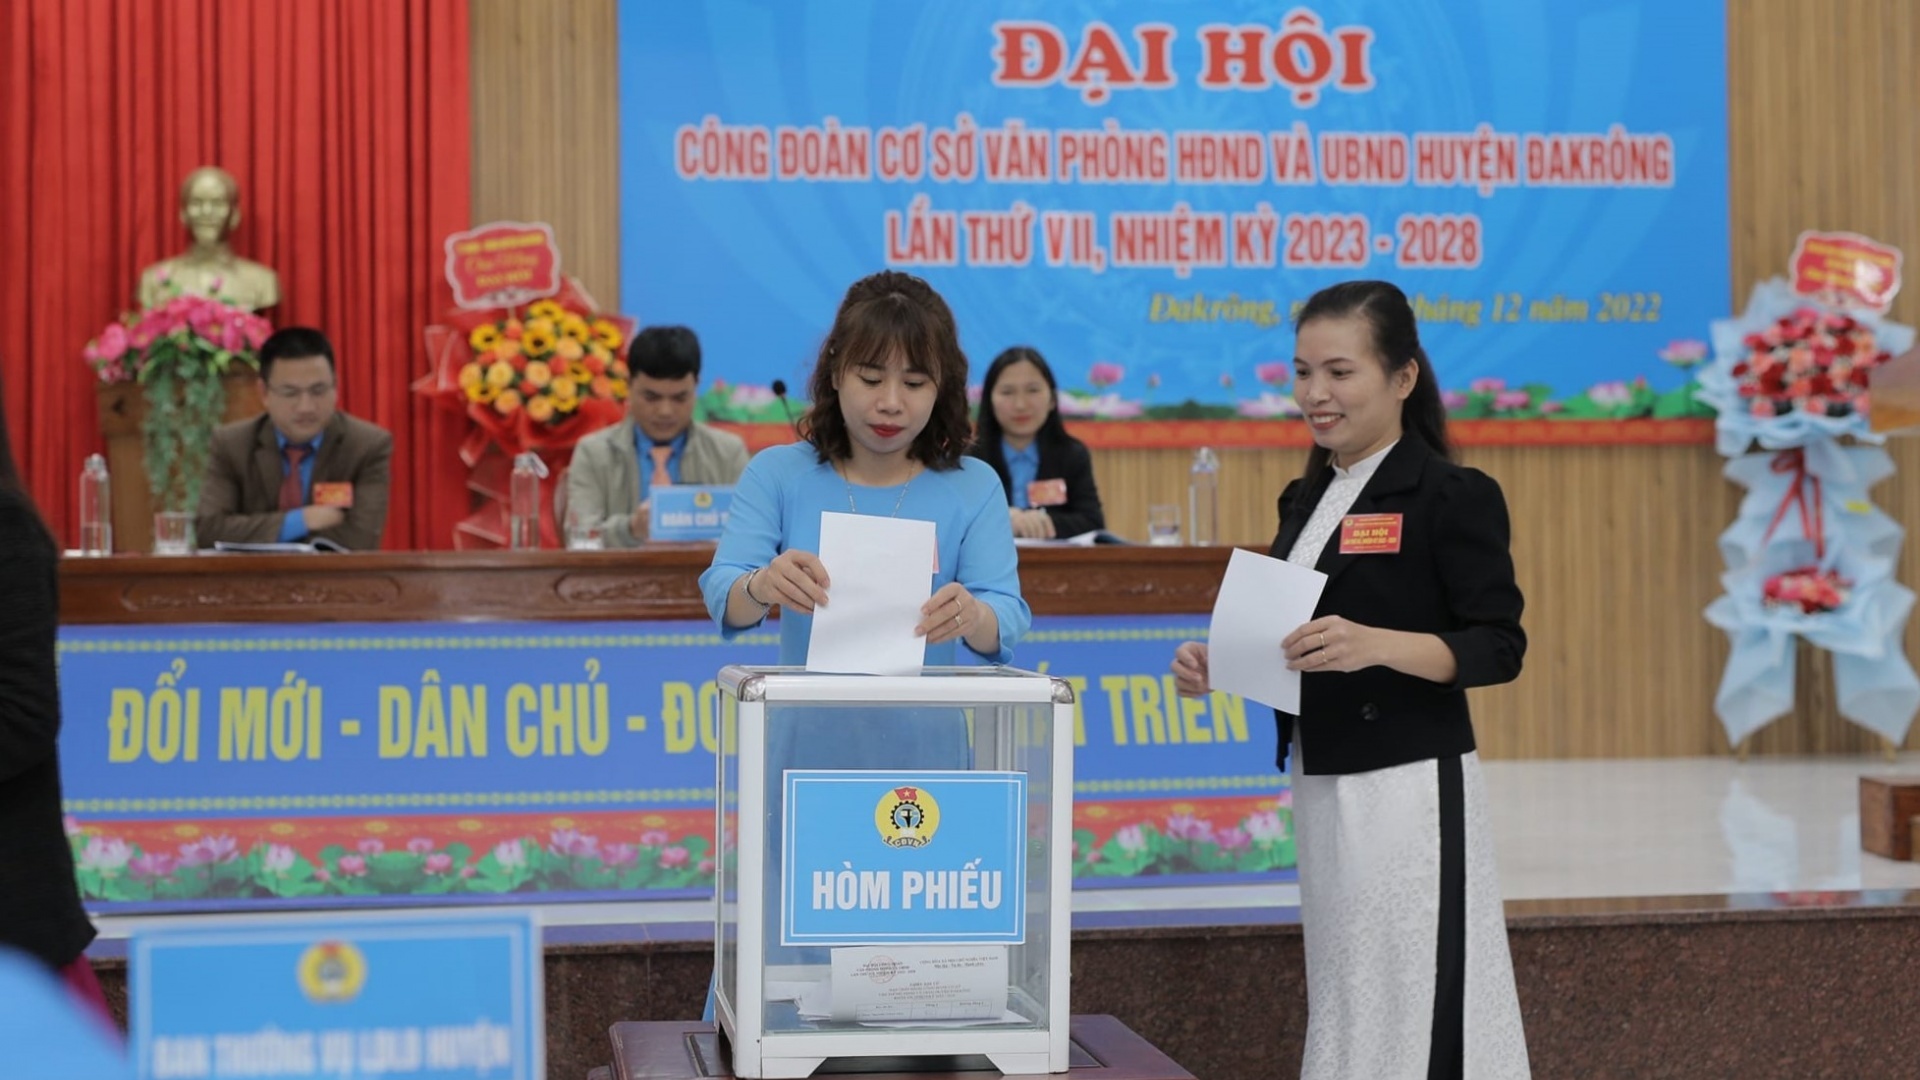 Huyện miền núi tỉnh Quảng Trị đã hoàn thành đại hội công đoàn cơ sở